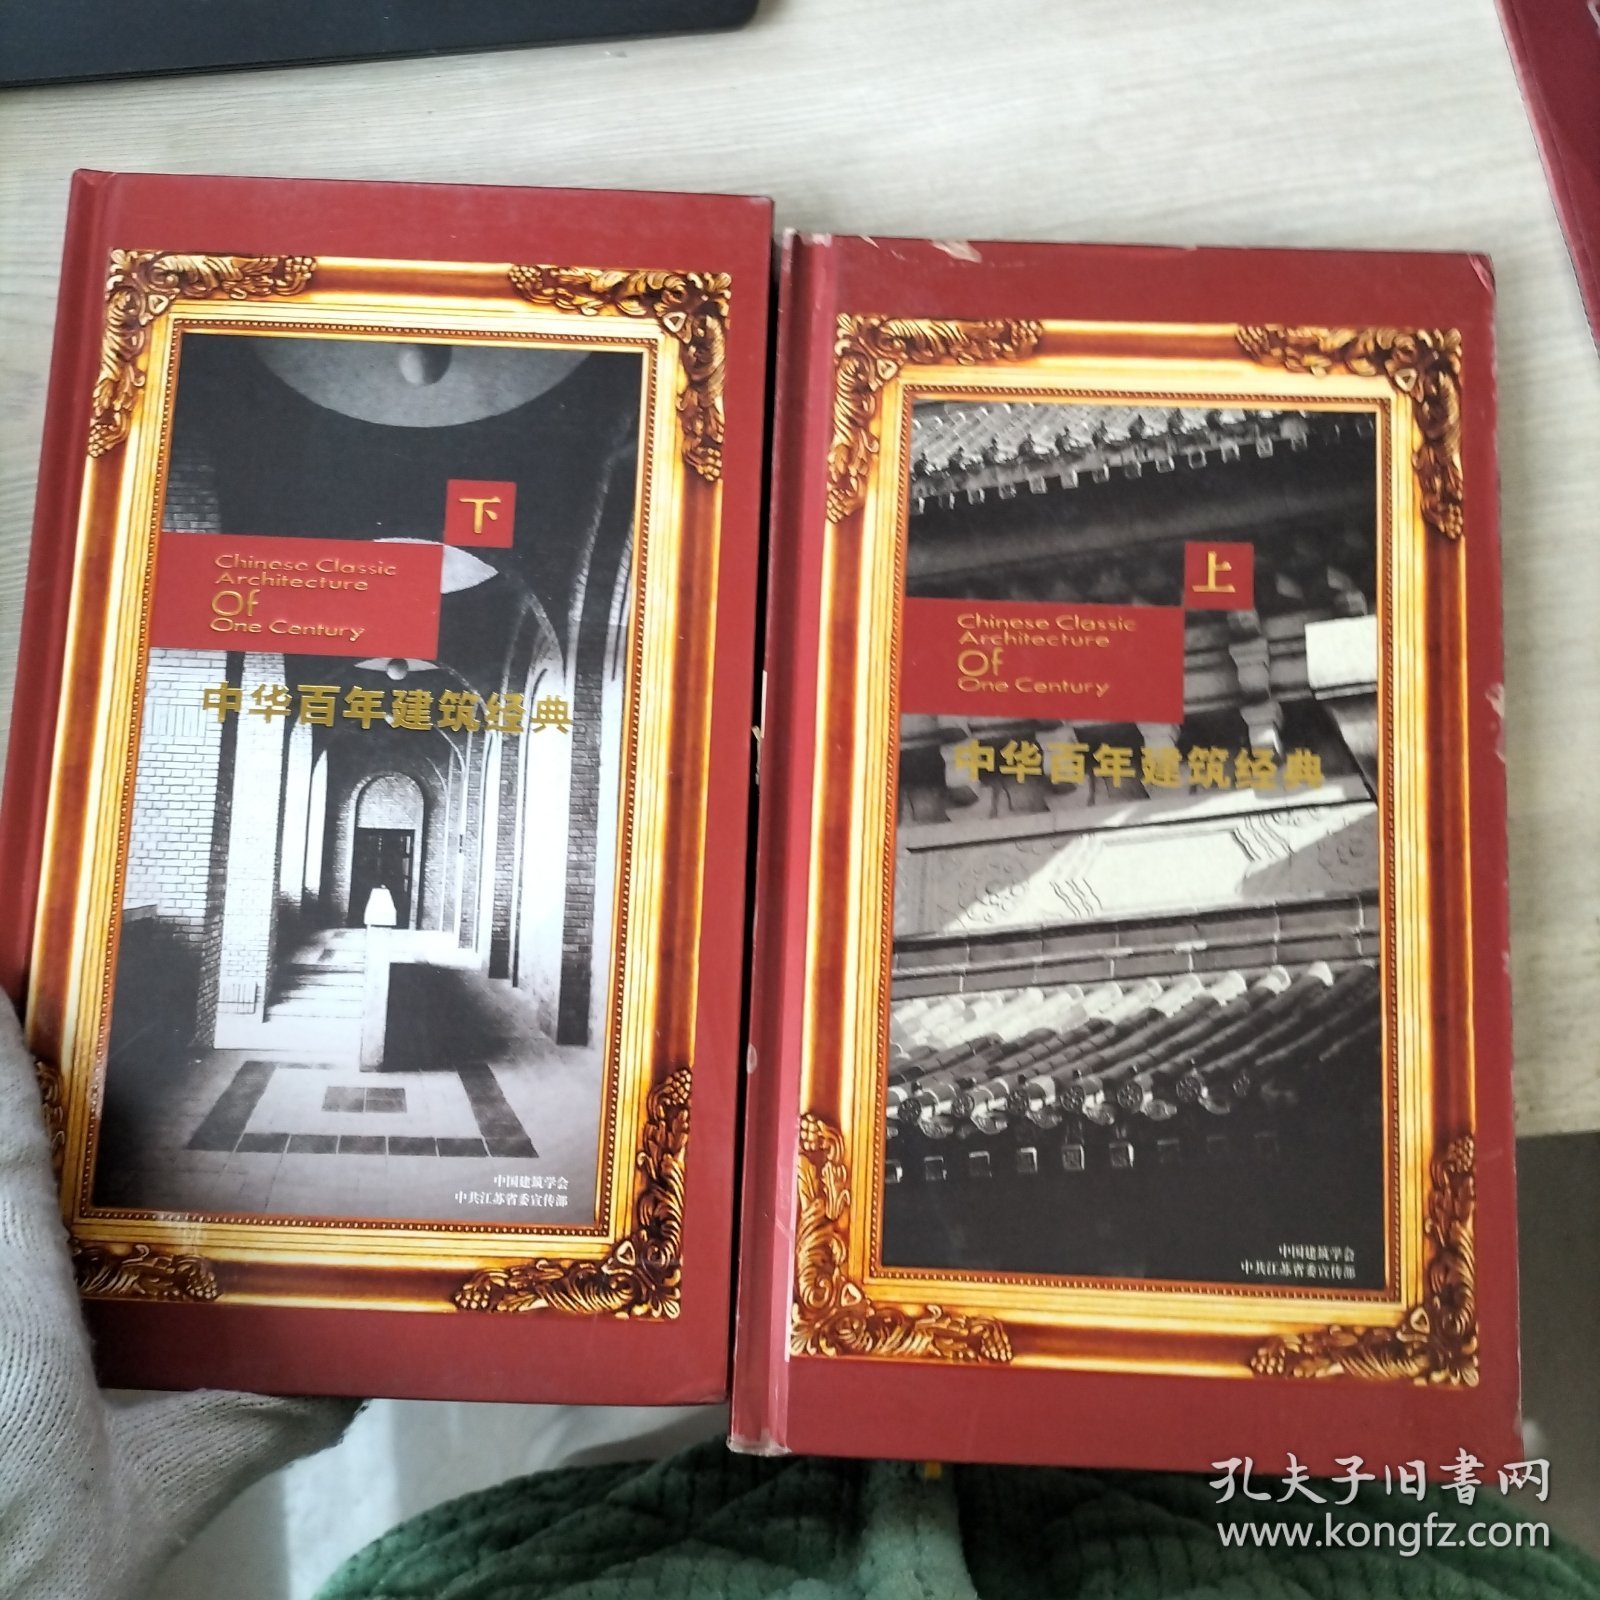 中华百年建筑经典 DVD (上下册)